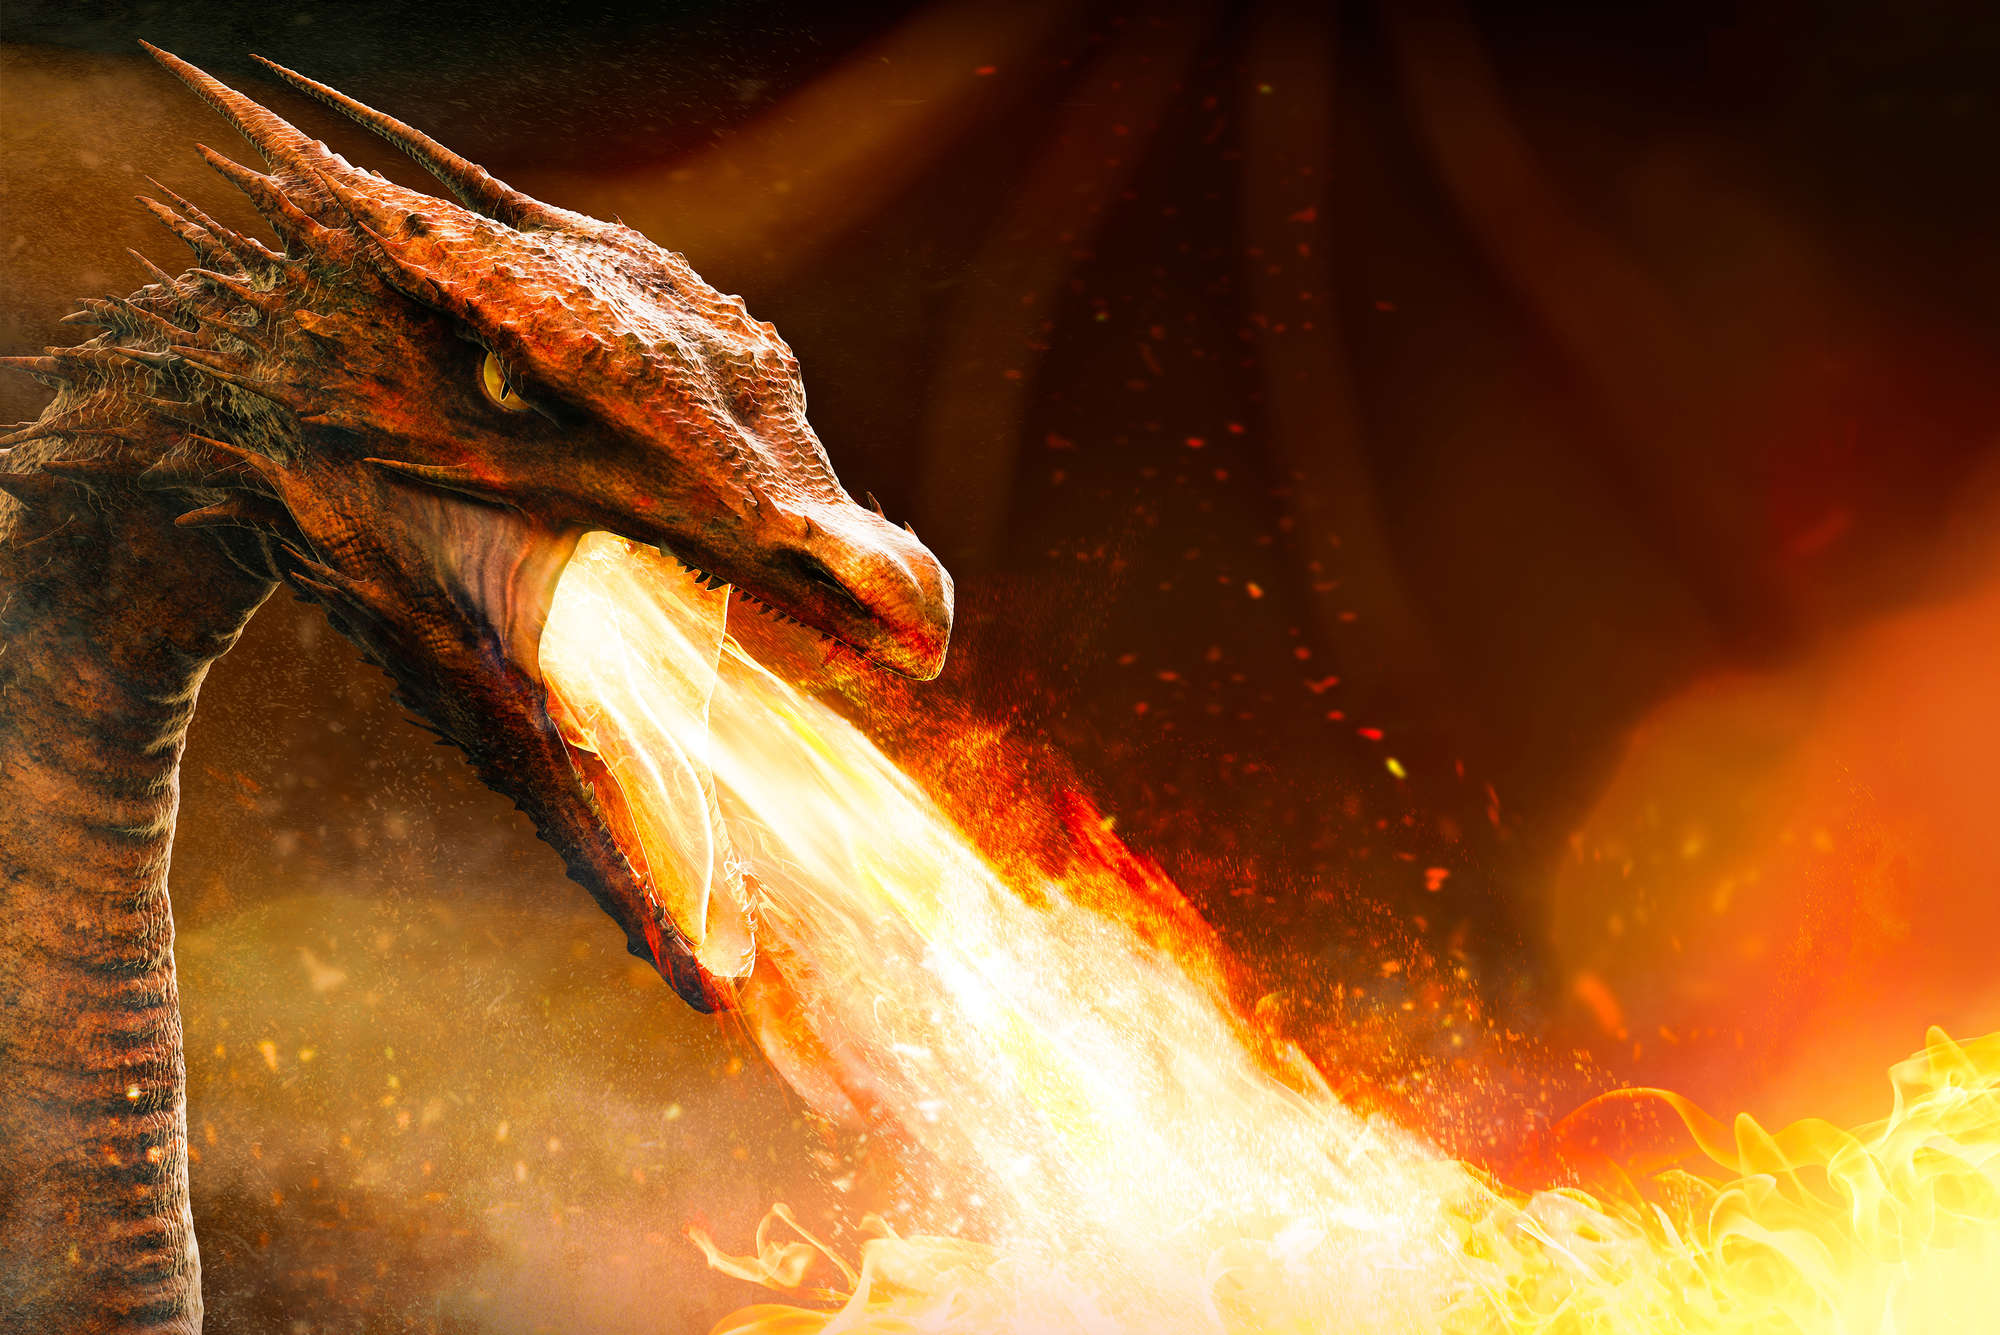             Papel pintado de fantasía dragón que escupe fuego sobre vellón liso de nácar
        